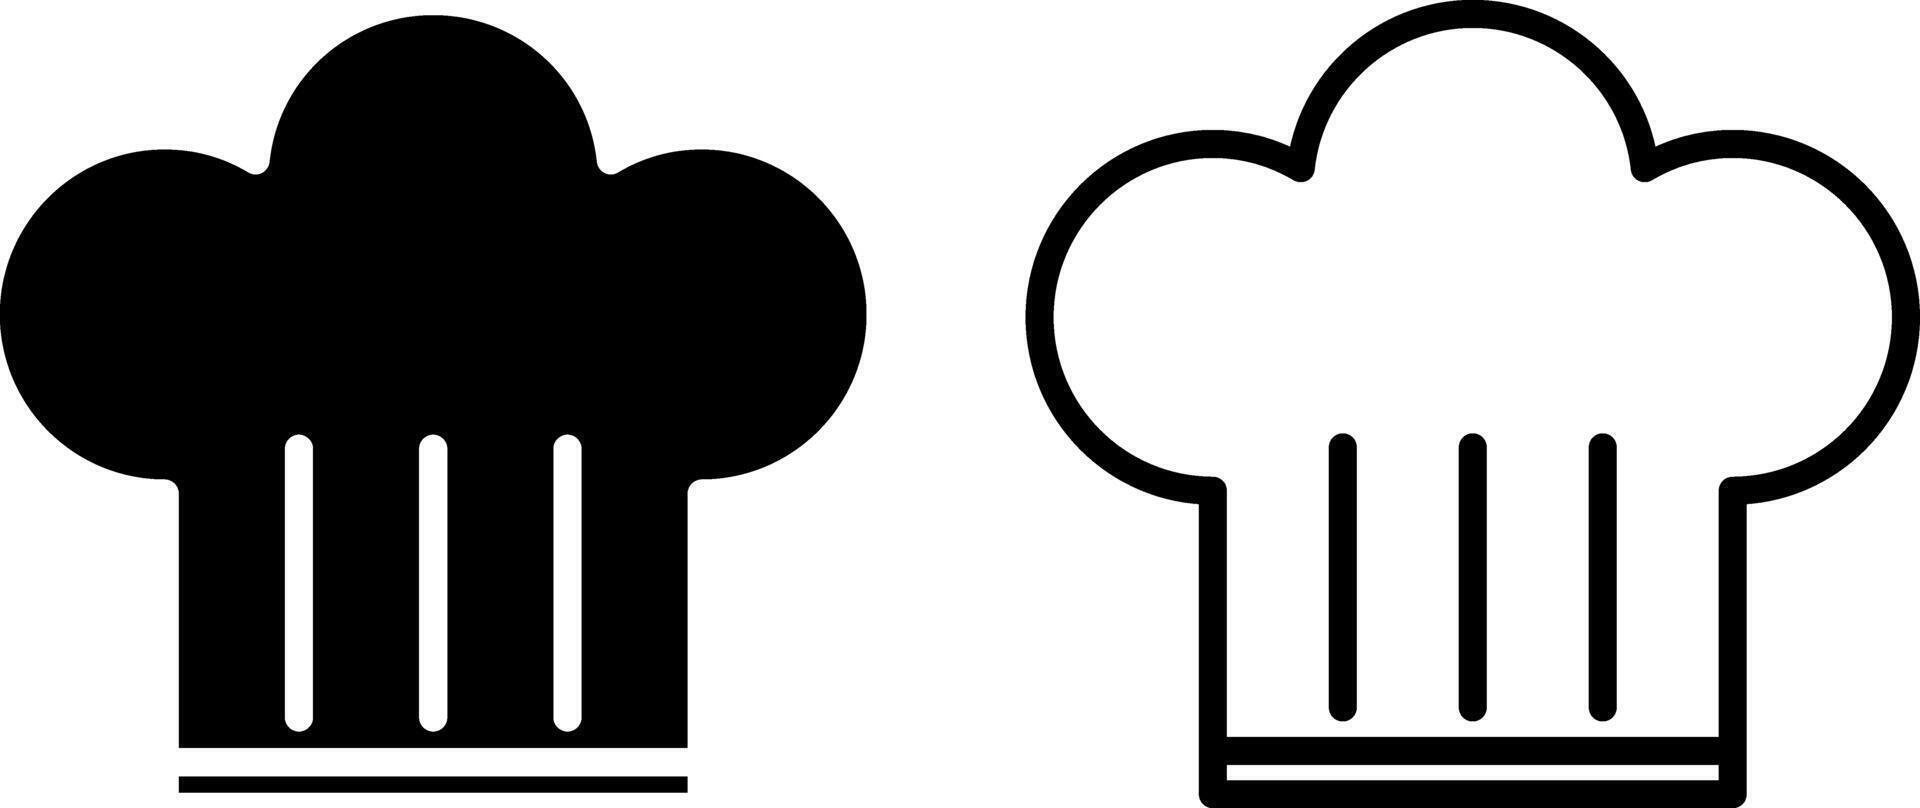 kock hatt ikon, tecken, eller symbol i glyf och linje stil isolerat på transparent bakgrund. vektor illustration